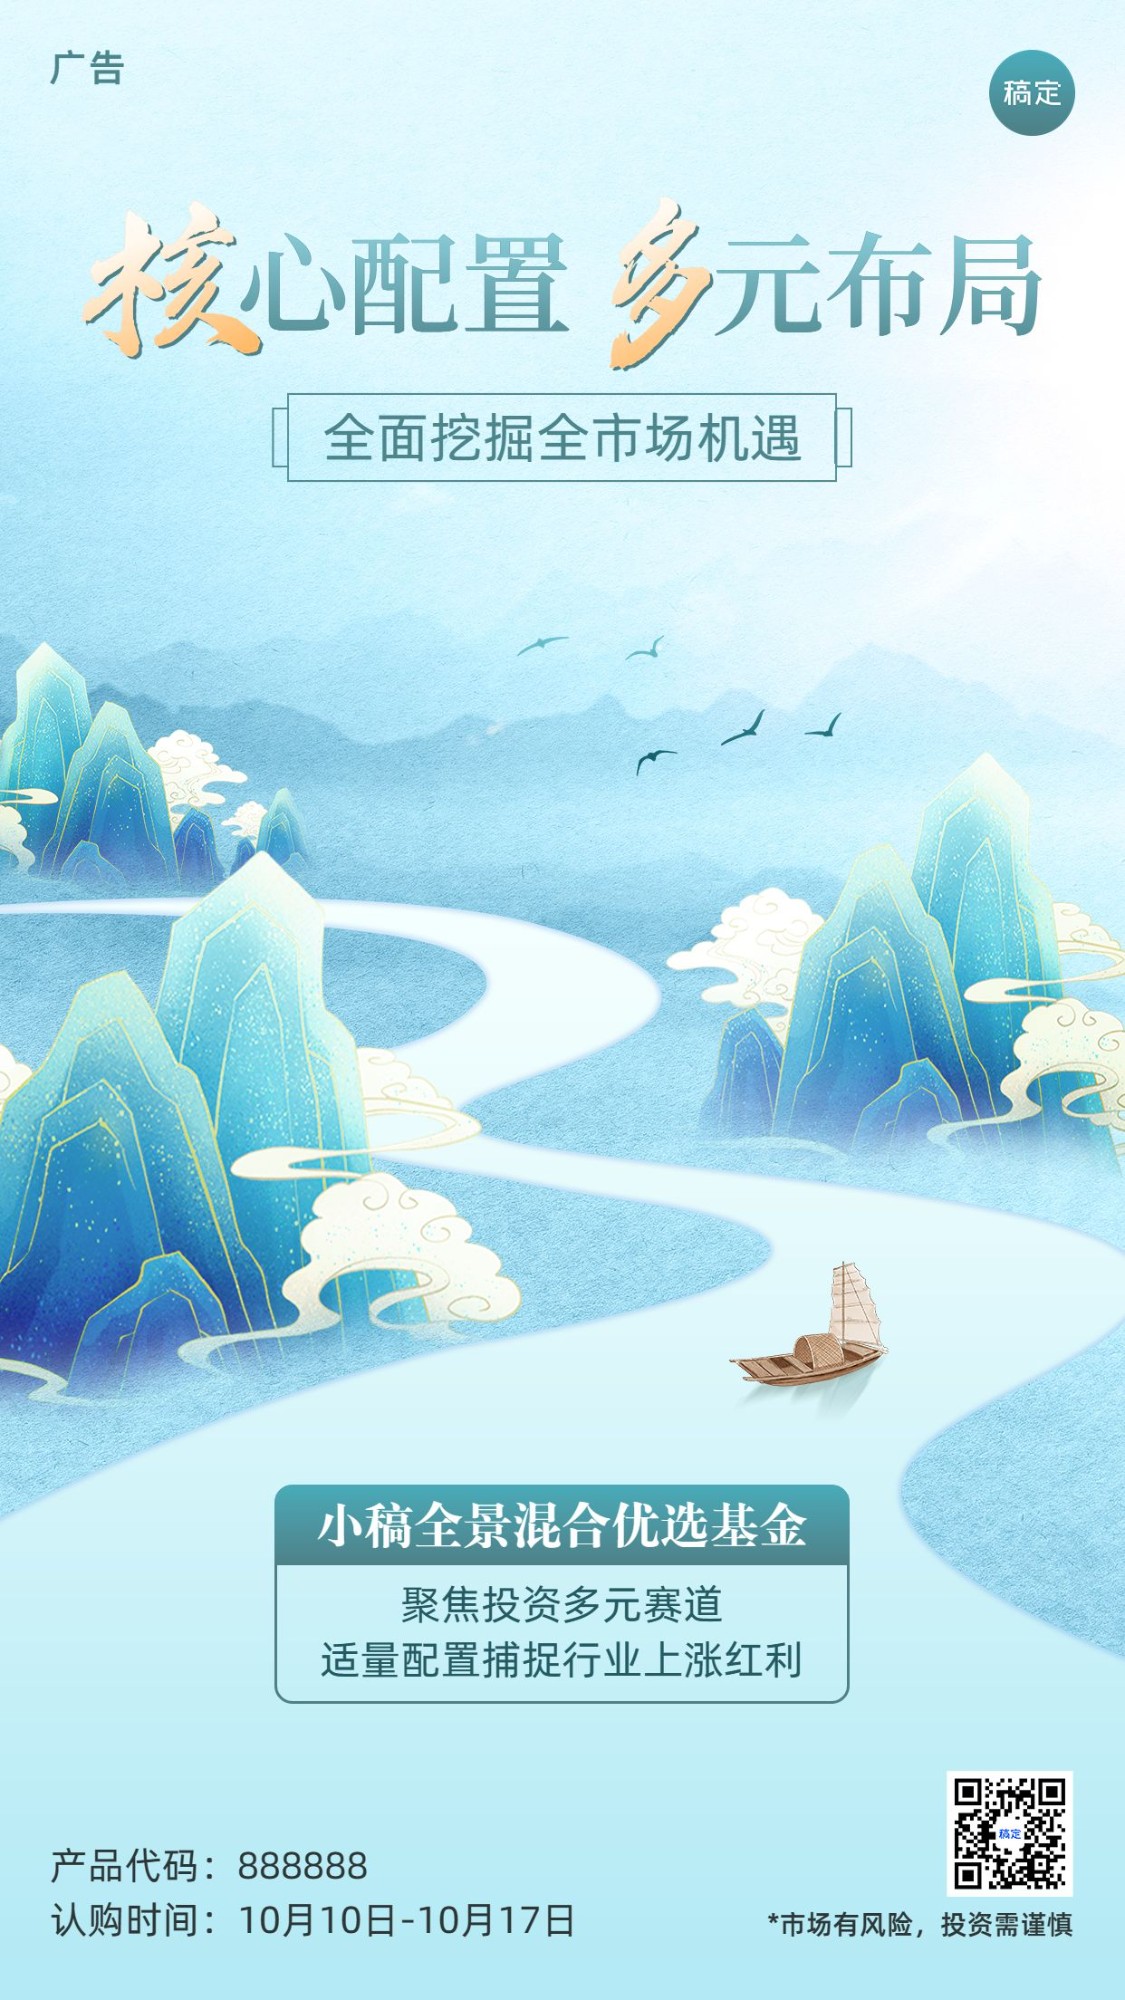 金融基金产品发售营销宣传水墨中国风手机海报预览效果